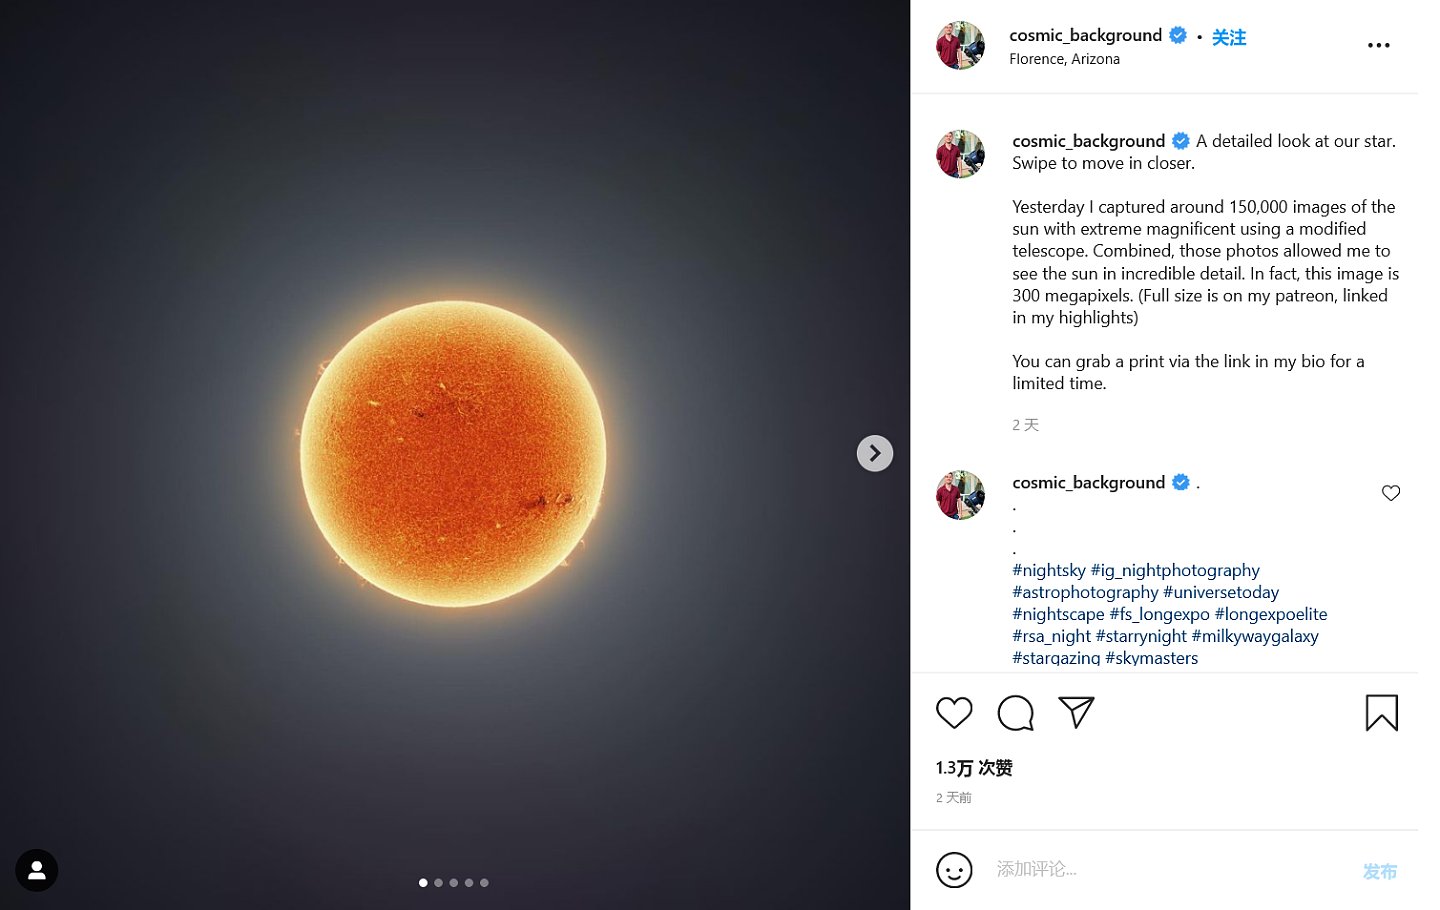 天文摄影家用15万张图制作出一张壮观的太阳照 - 5